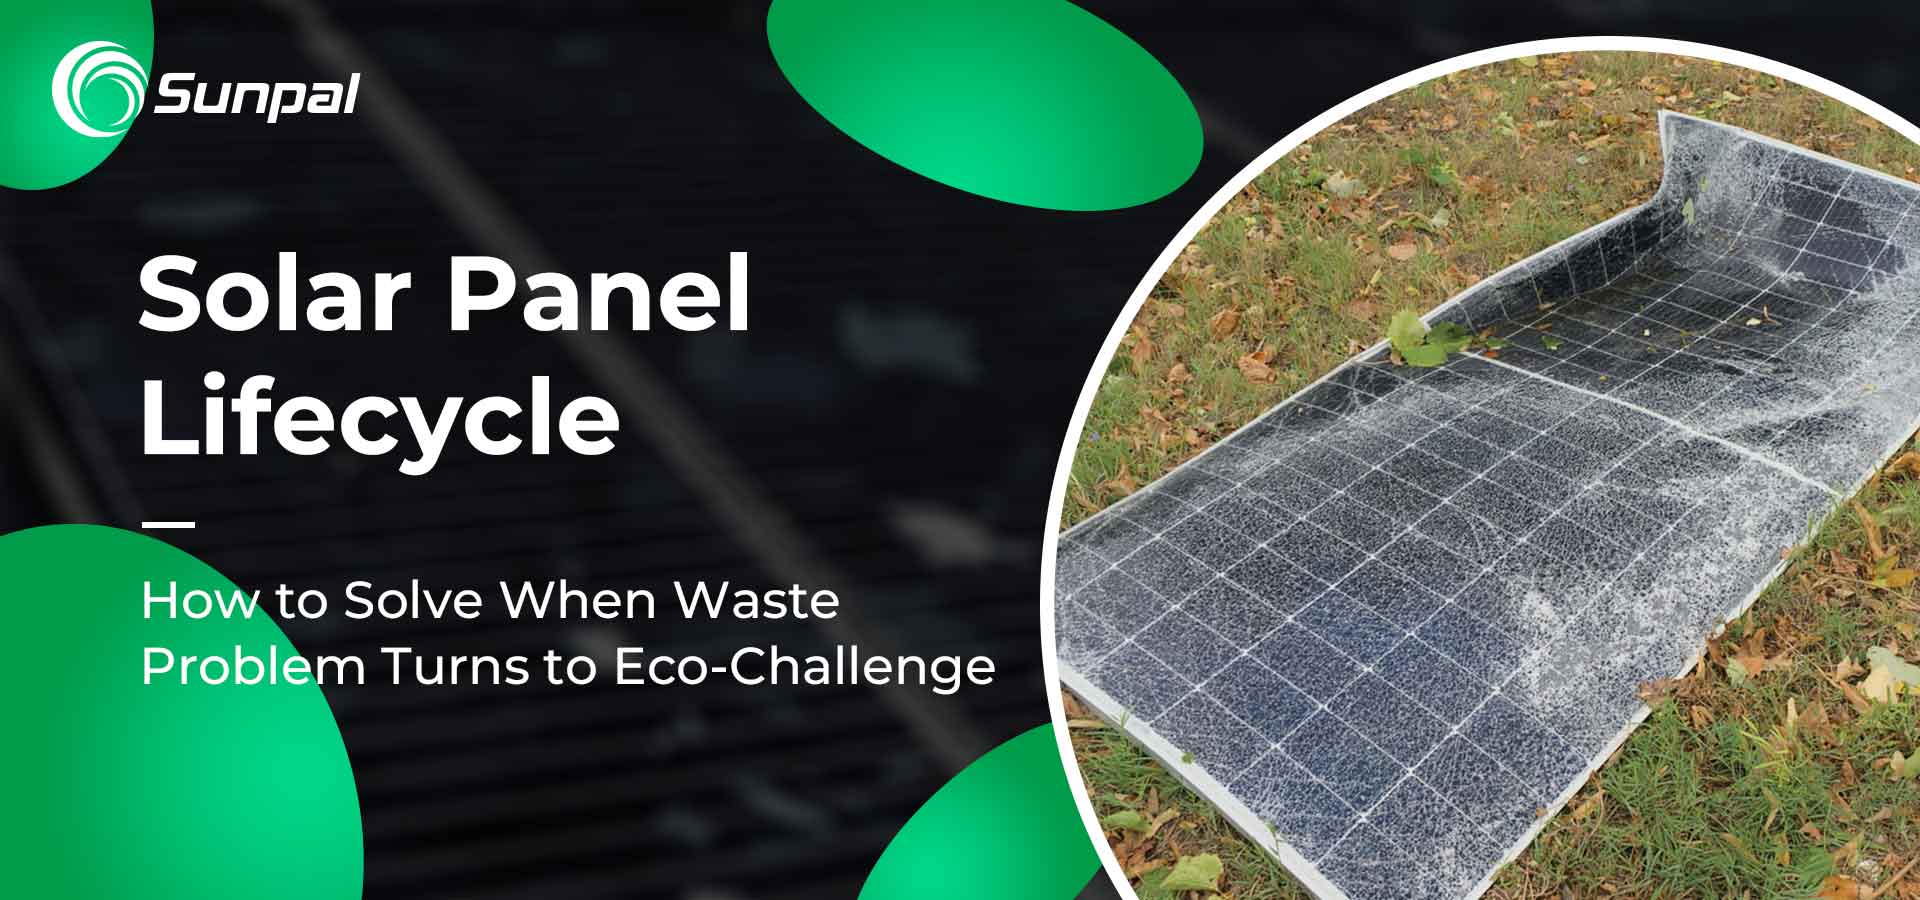 Ciclo de vida de los paneles solares: el problema de los residuos se convierte en un desafío ecológico